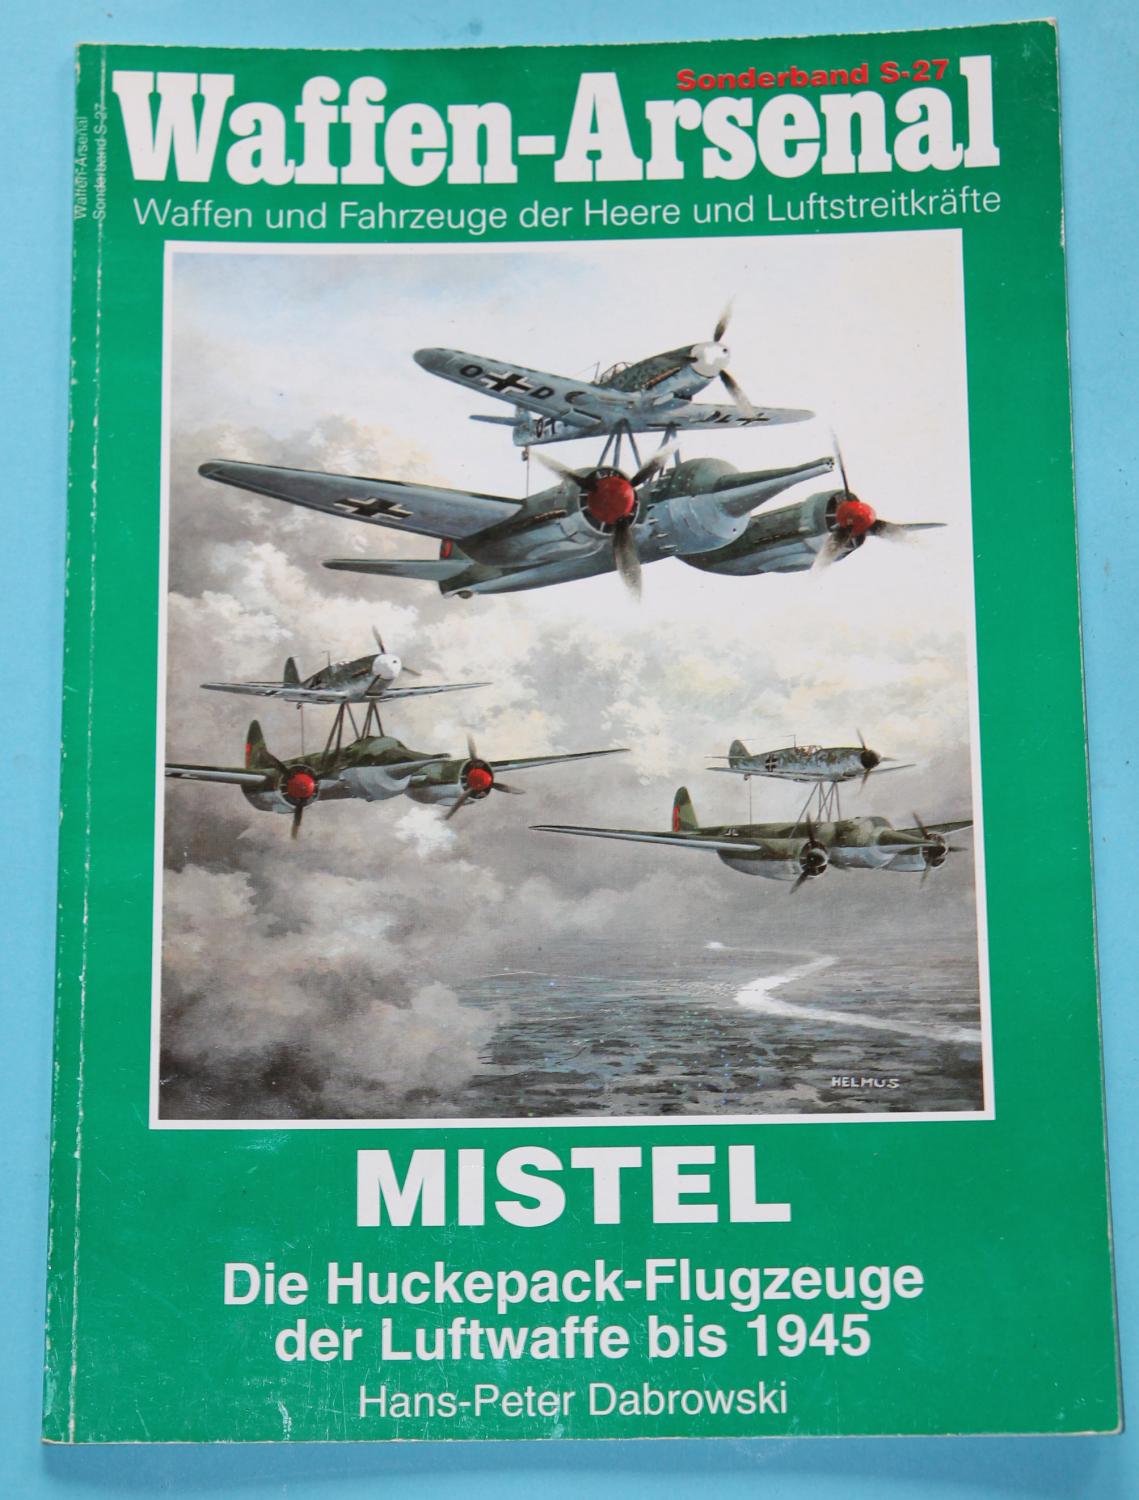 Mistel - Die Huckepack-Flugzeuge der Luftwaffe bis 1945 , Waffen-Arsenal Sonderband S-27 - Waffen und Fahrzeuge der Heere und Luftstreitkräfte - Dabrowski, Hans-Peter